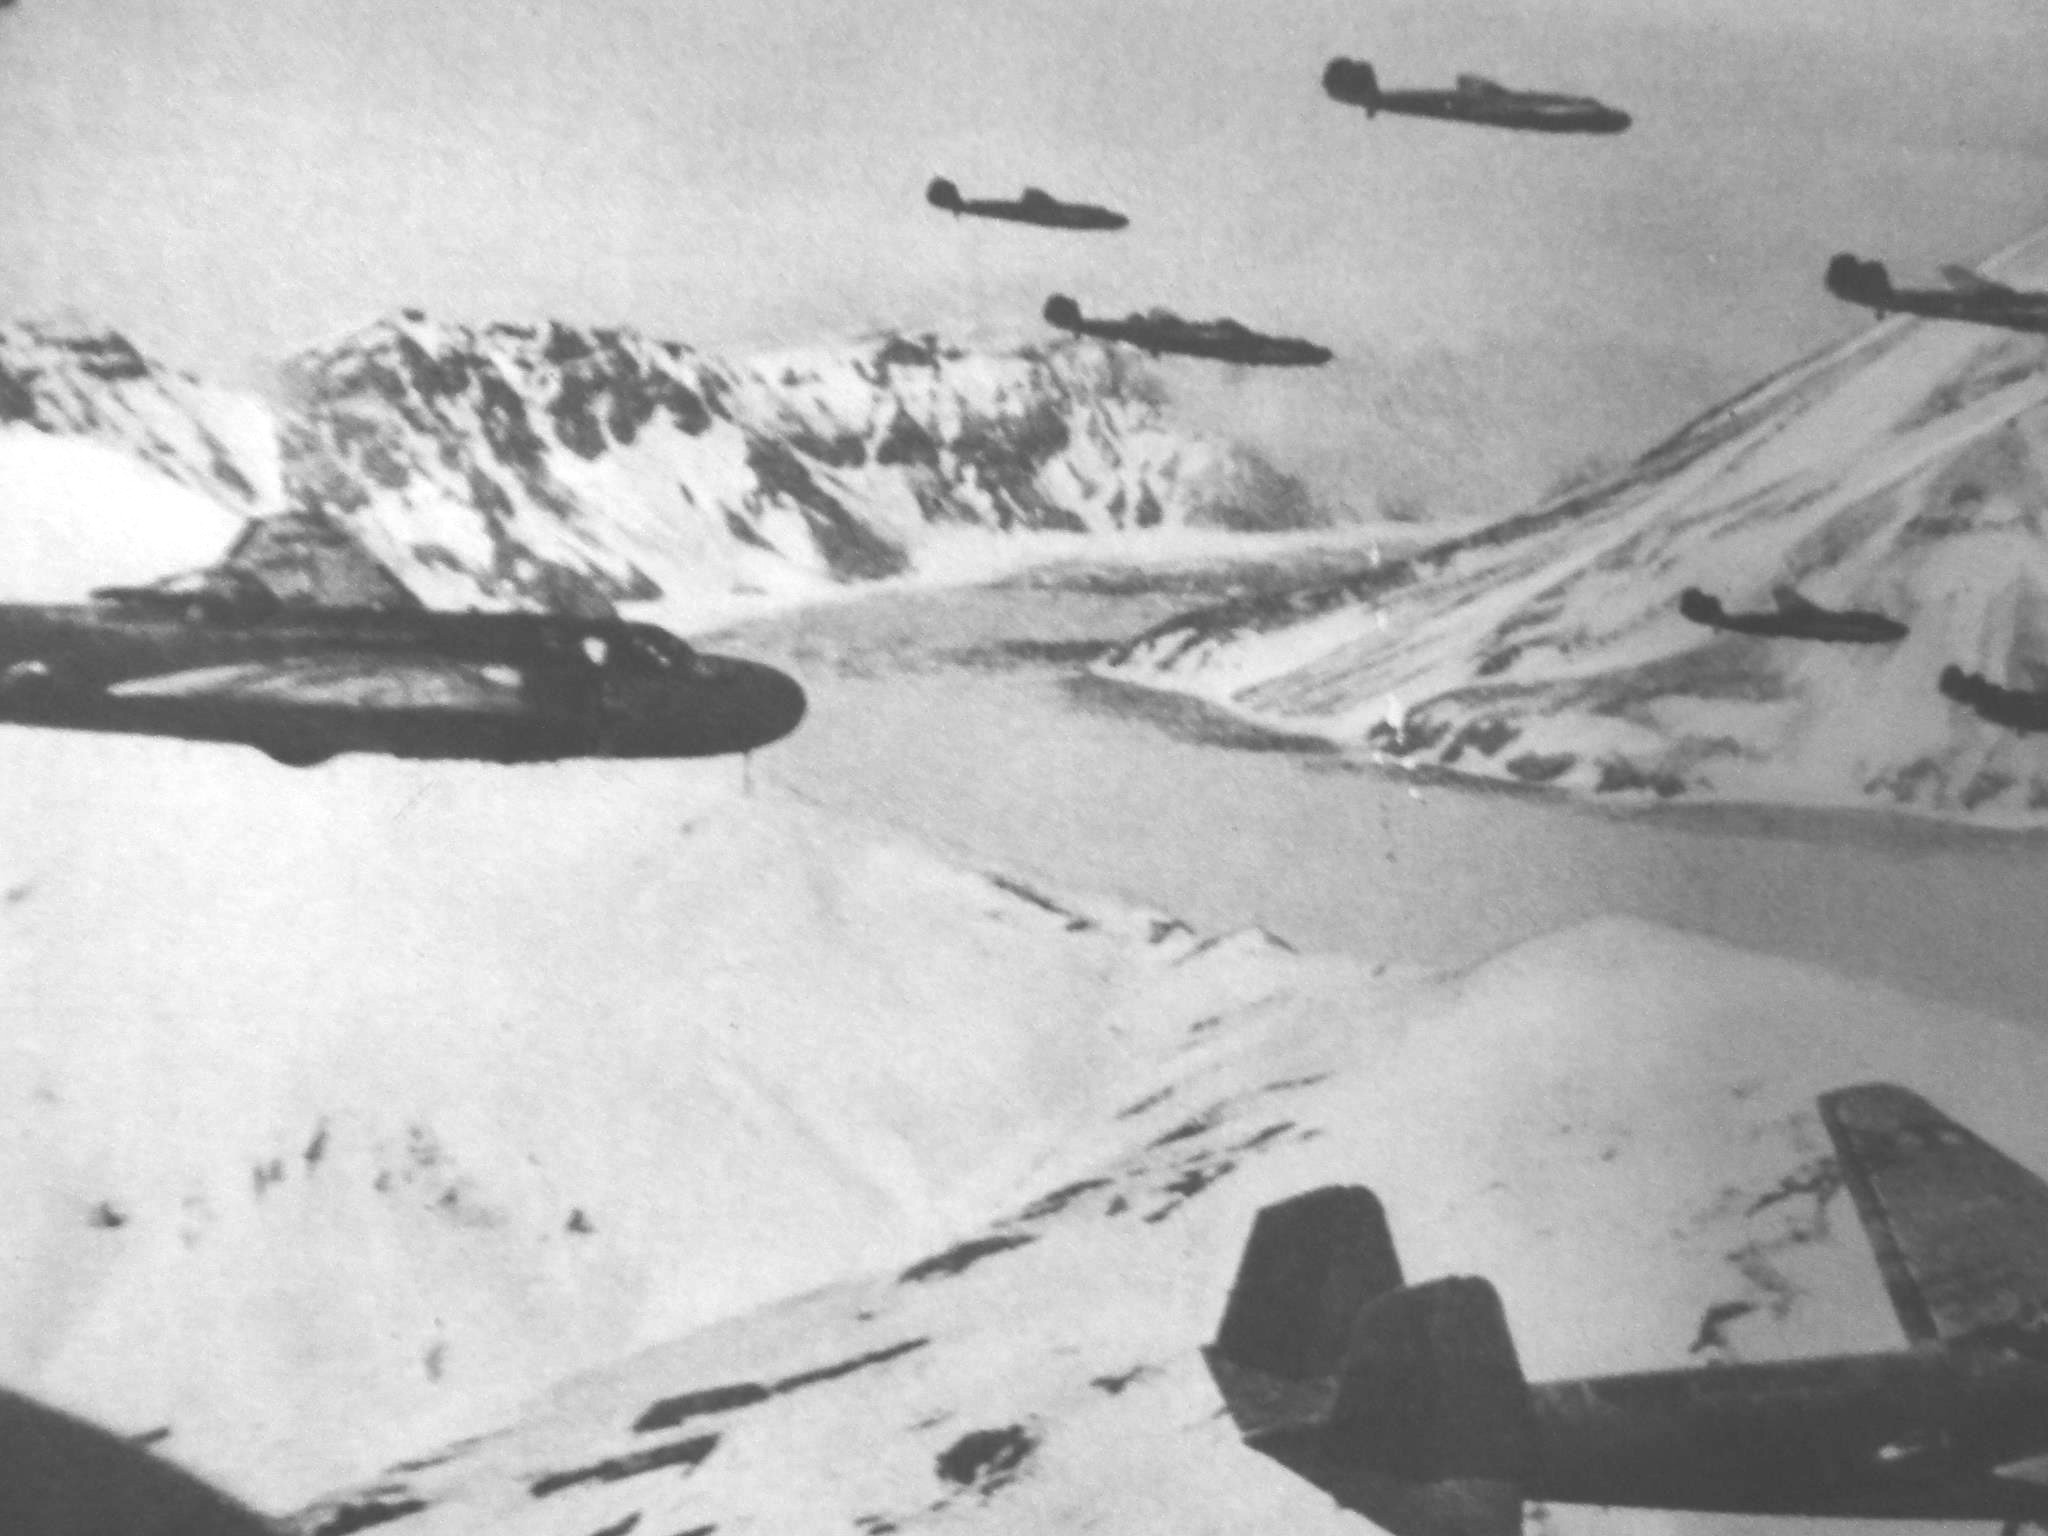 G3M bombers in flight in the Aleutian islands, 1942-1943